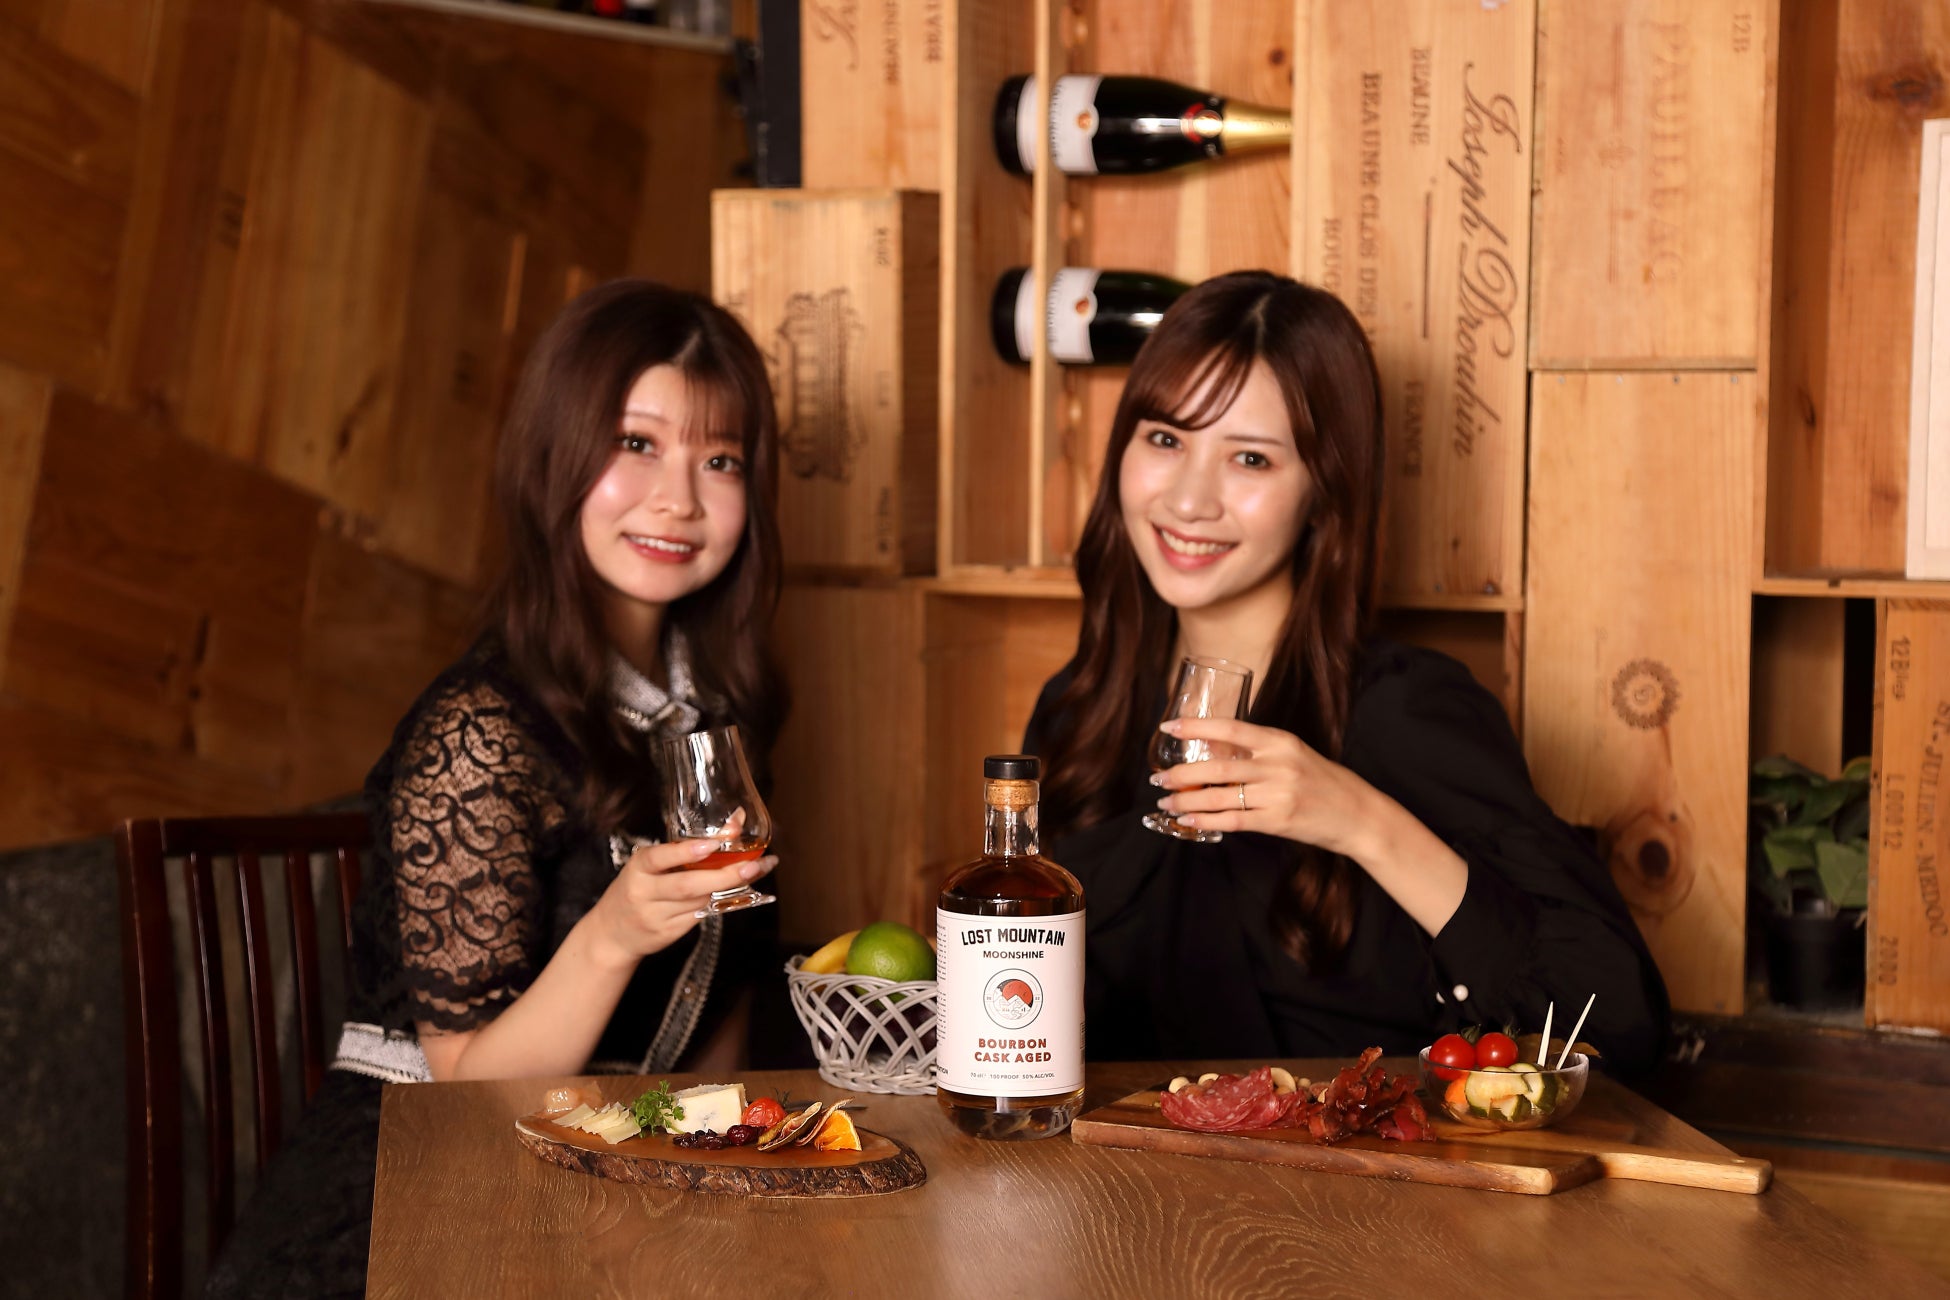 レストランと音楽の融合！
エンターテインメントレストランを提案する「BANK30」が
2月の毎週月曜日に実施するディナーライブ
TALIKA JAPON presents「MOMENT」のラインナップを発表